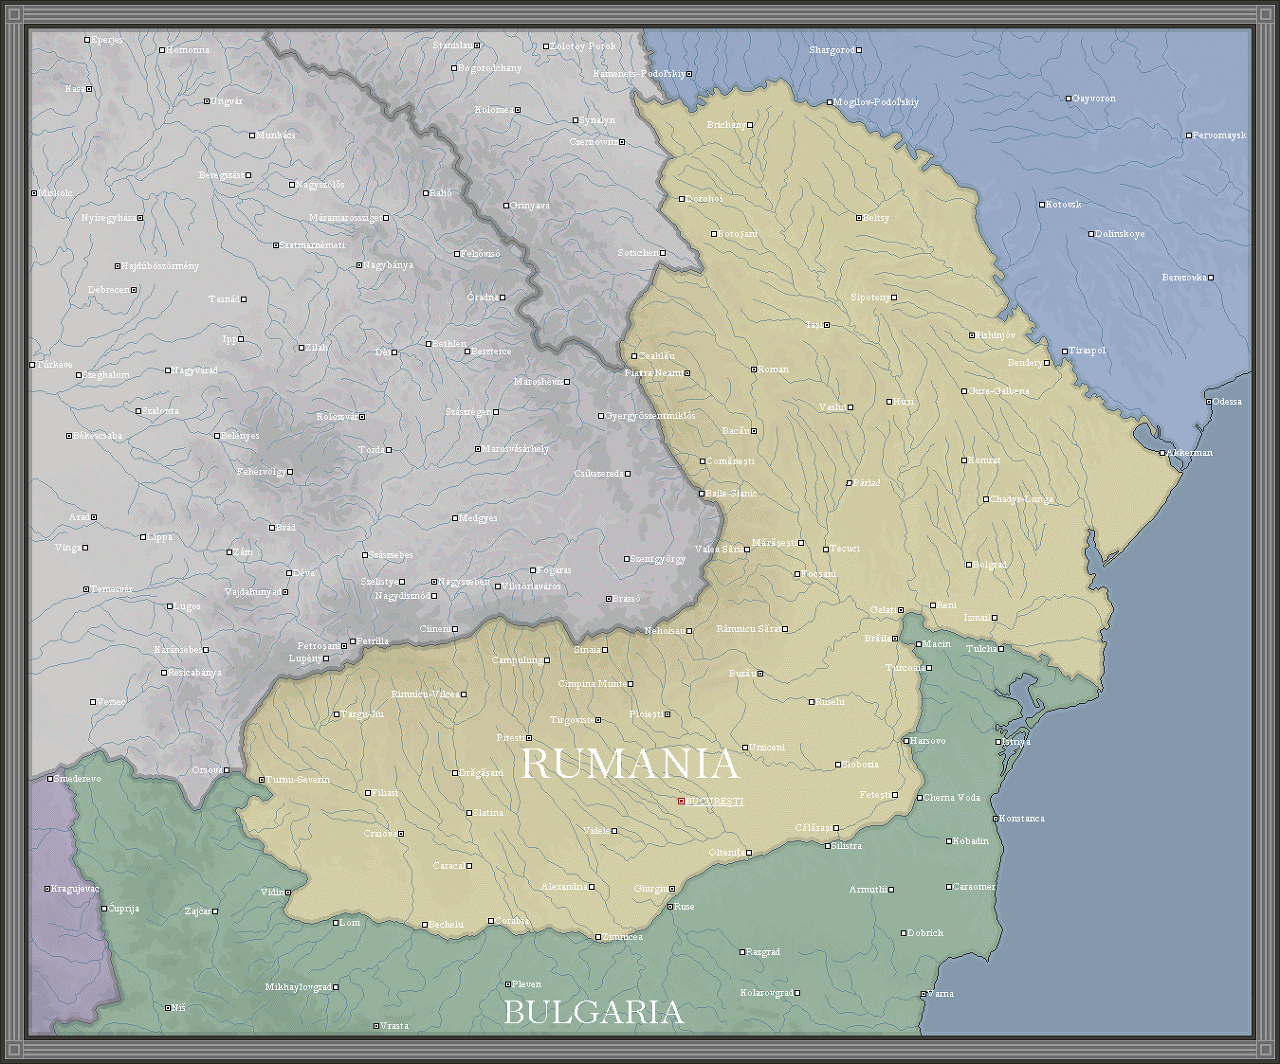 부쿠레슈티 조약 이후 루마니아 왕국 영토